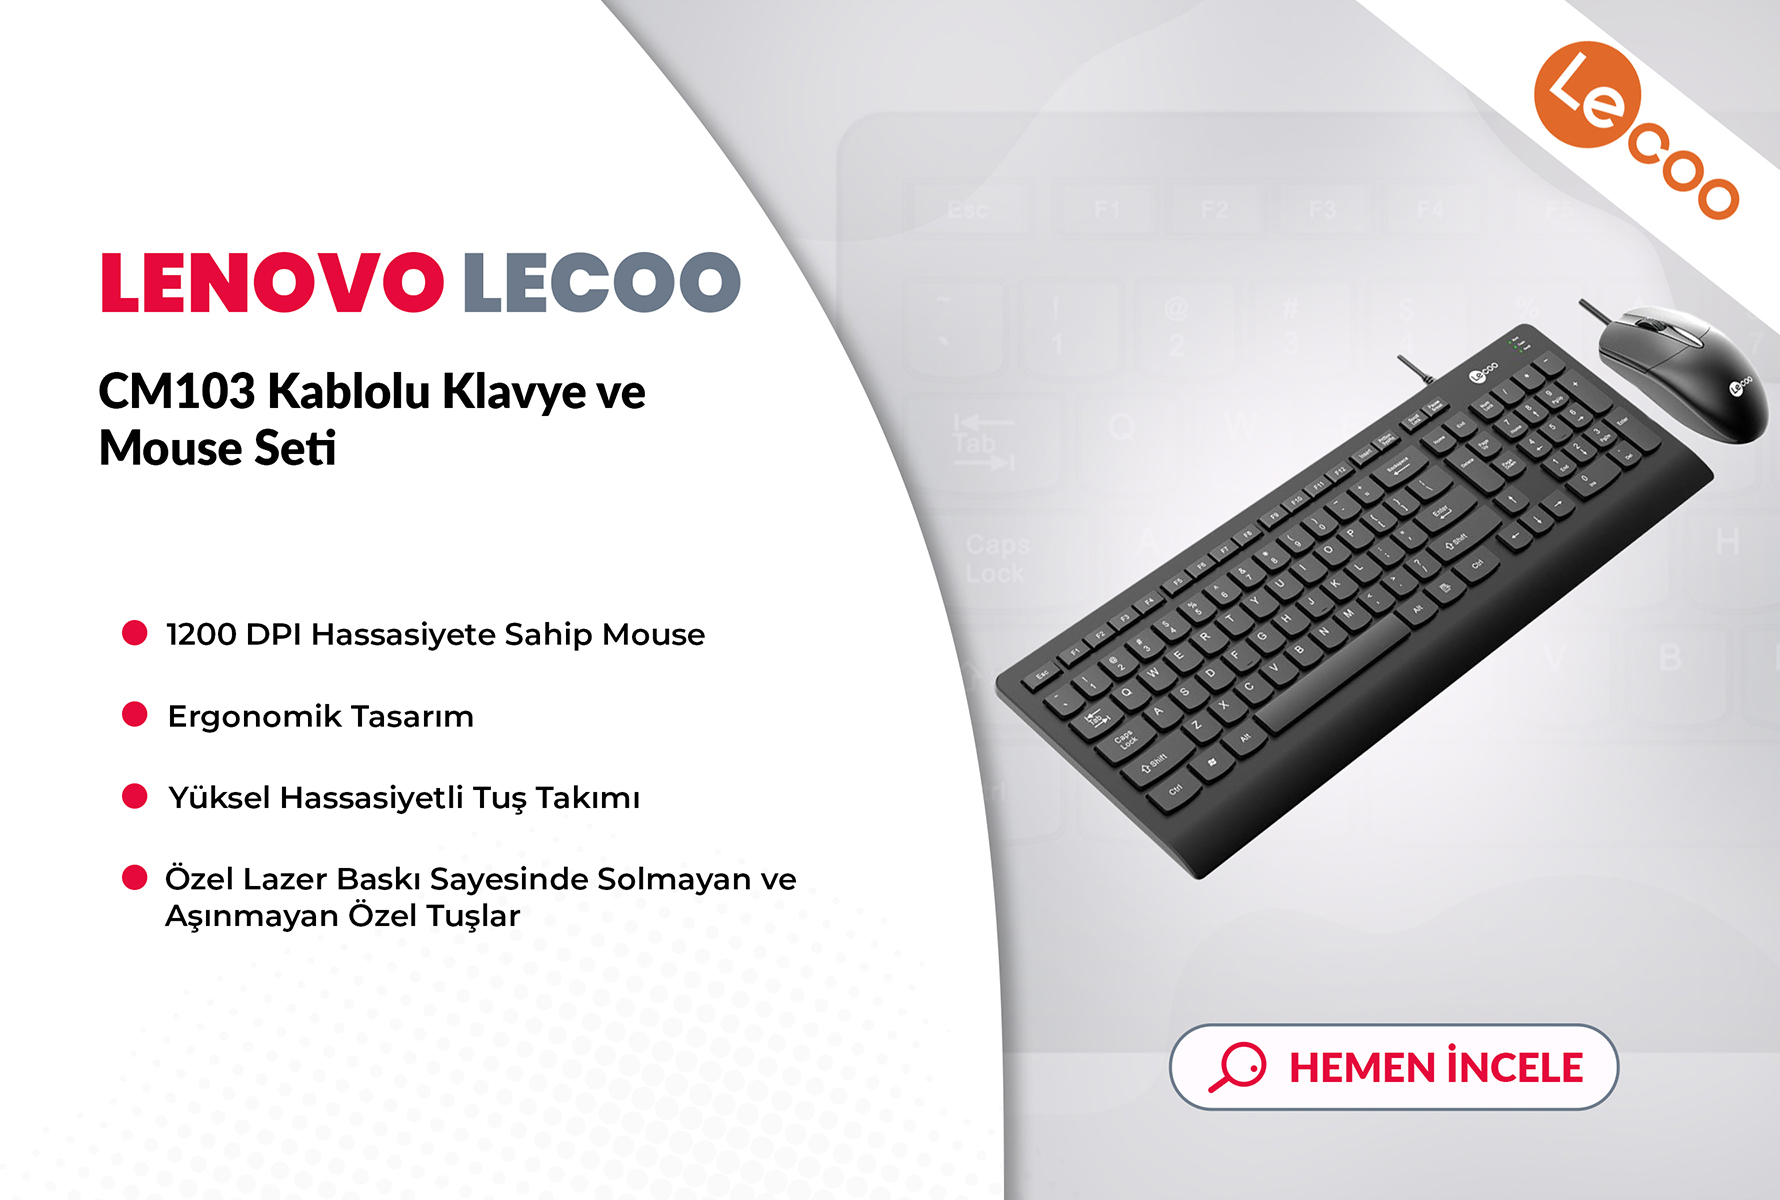 Lenovo Lecoo CM103 Kablolu Klavye ve Mouse Set